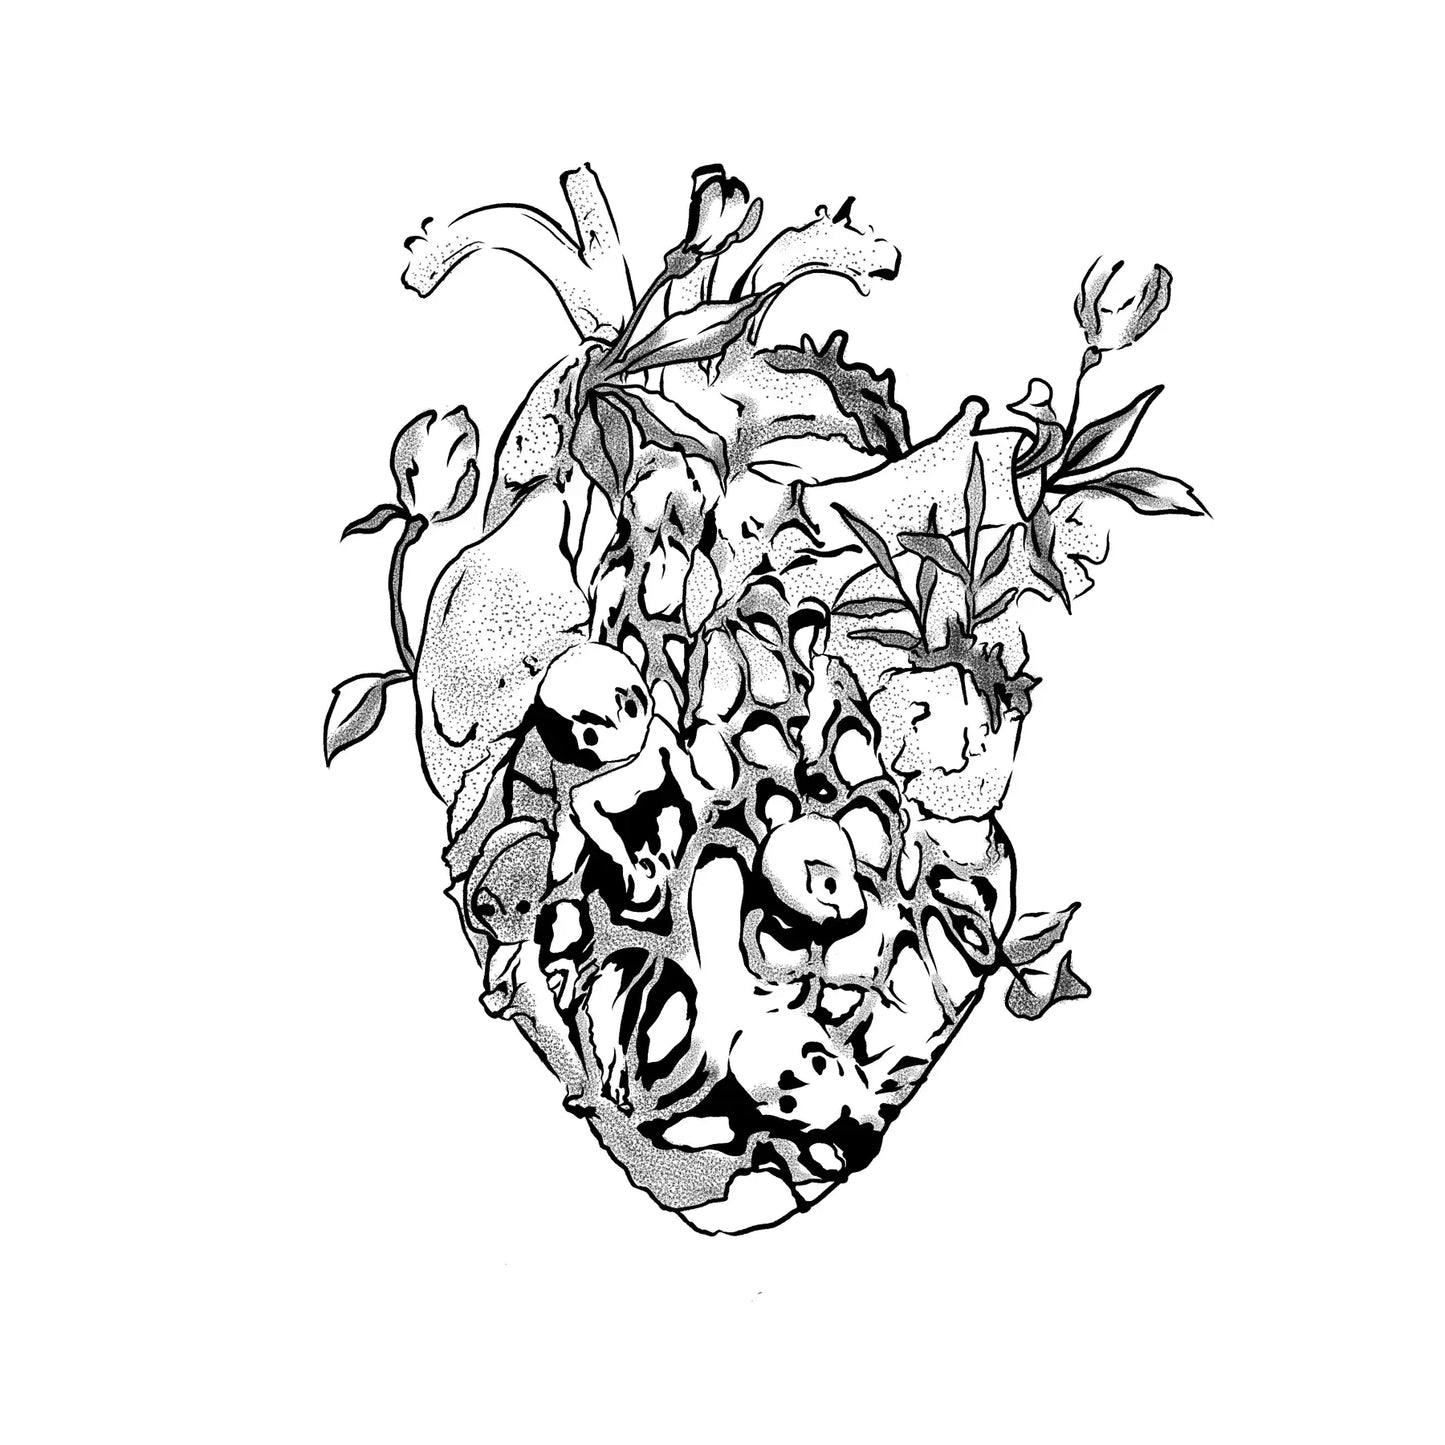 Rei's Heart(4x4 In)